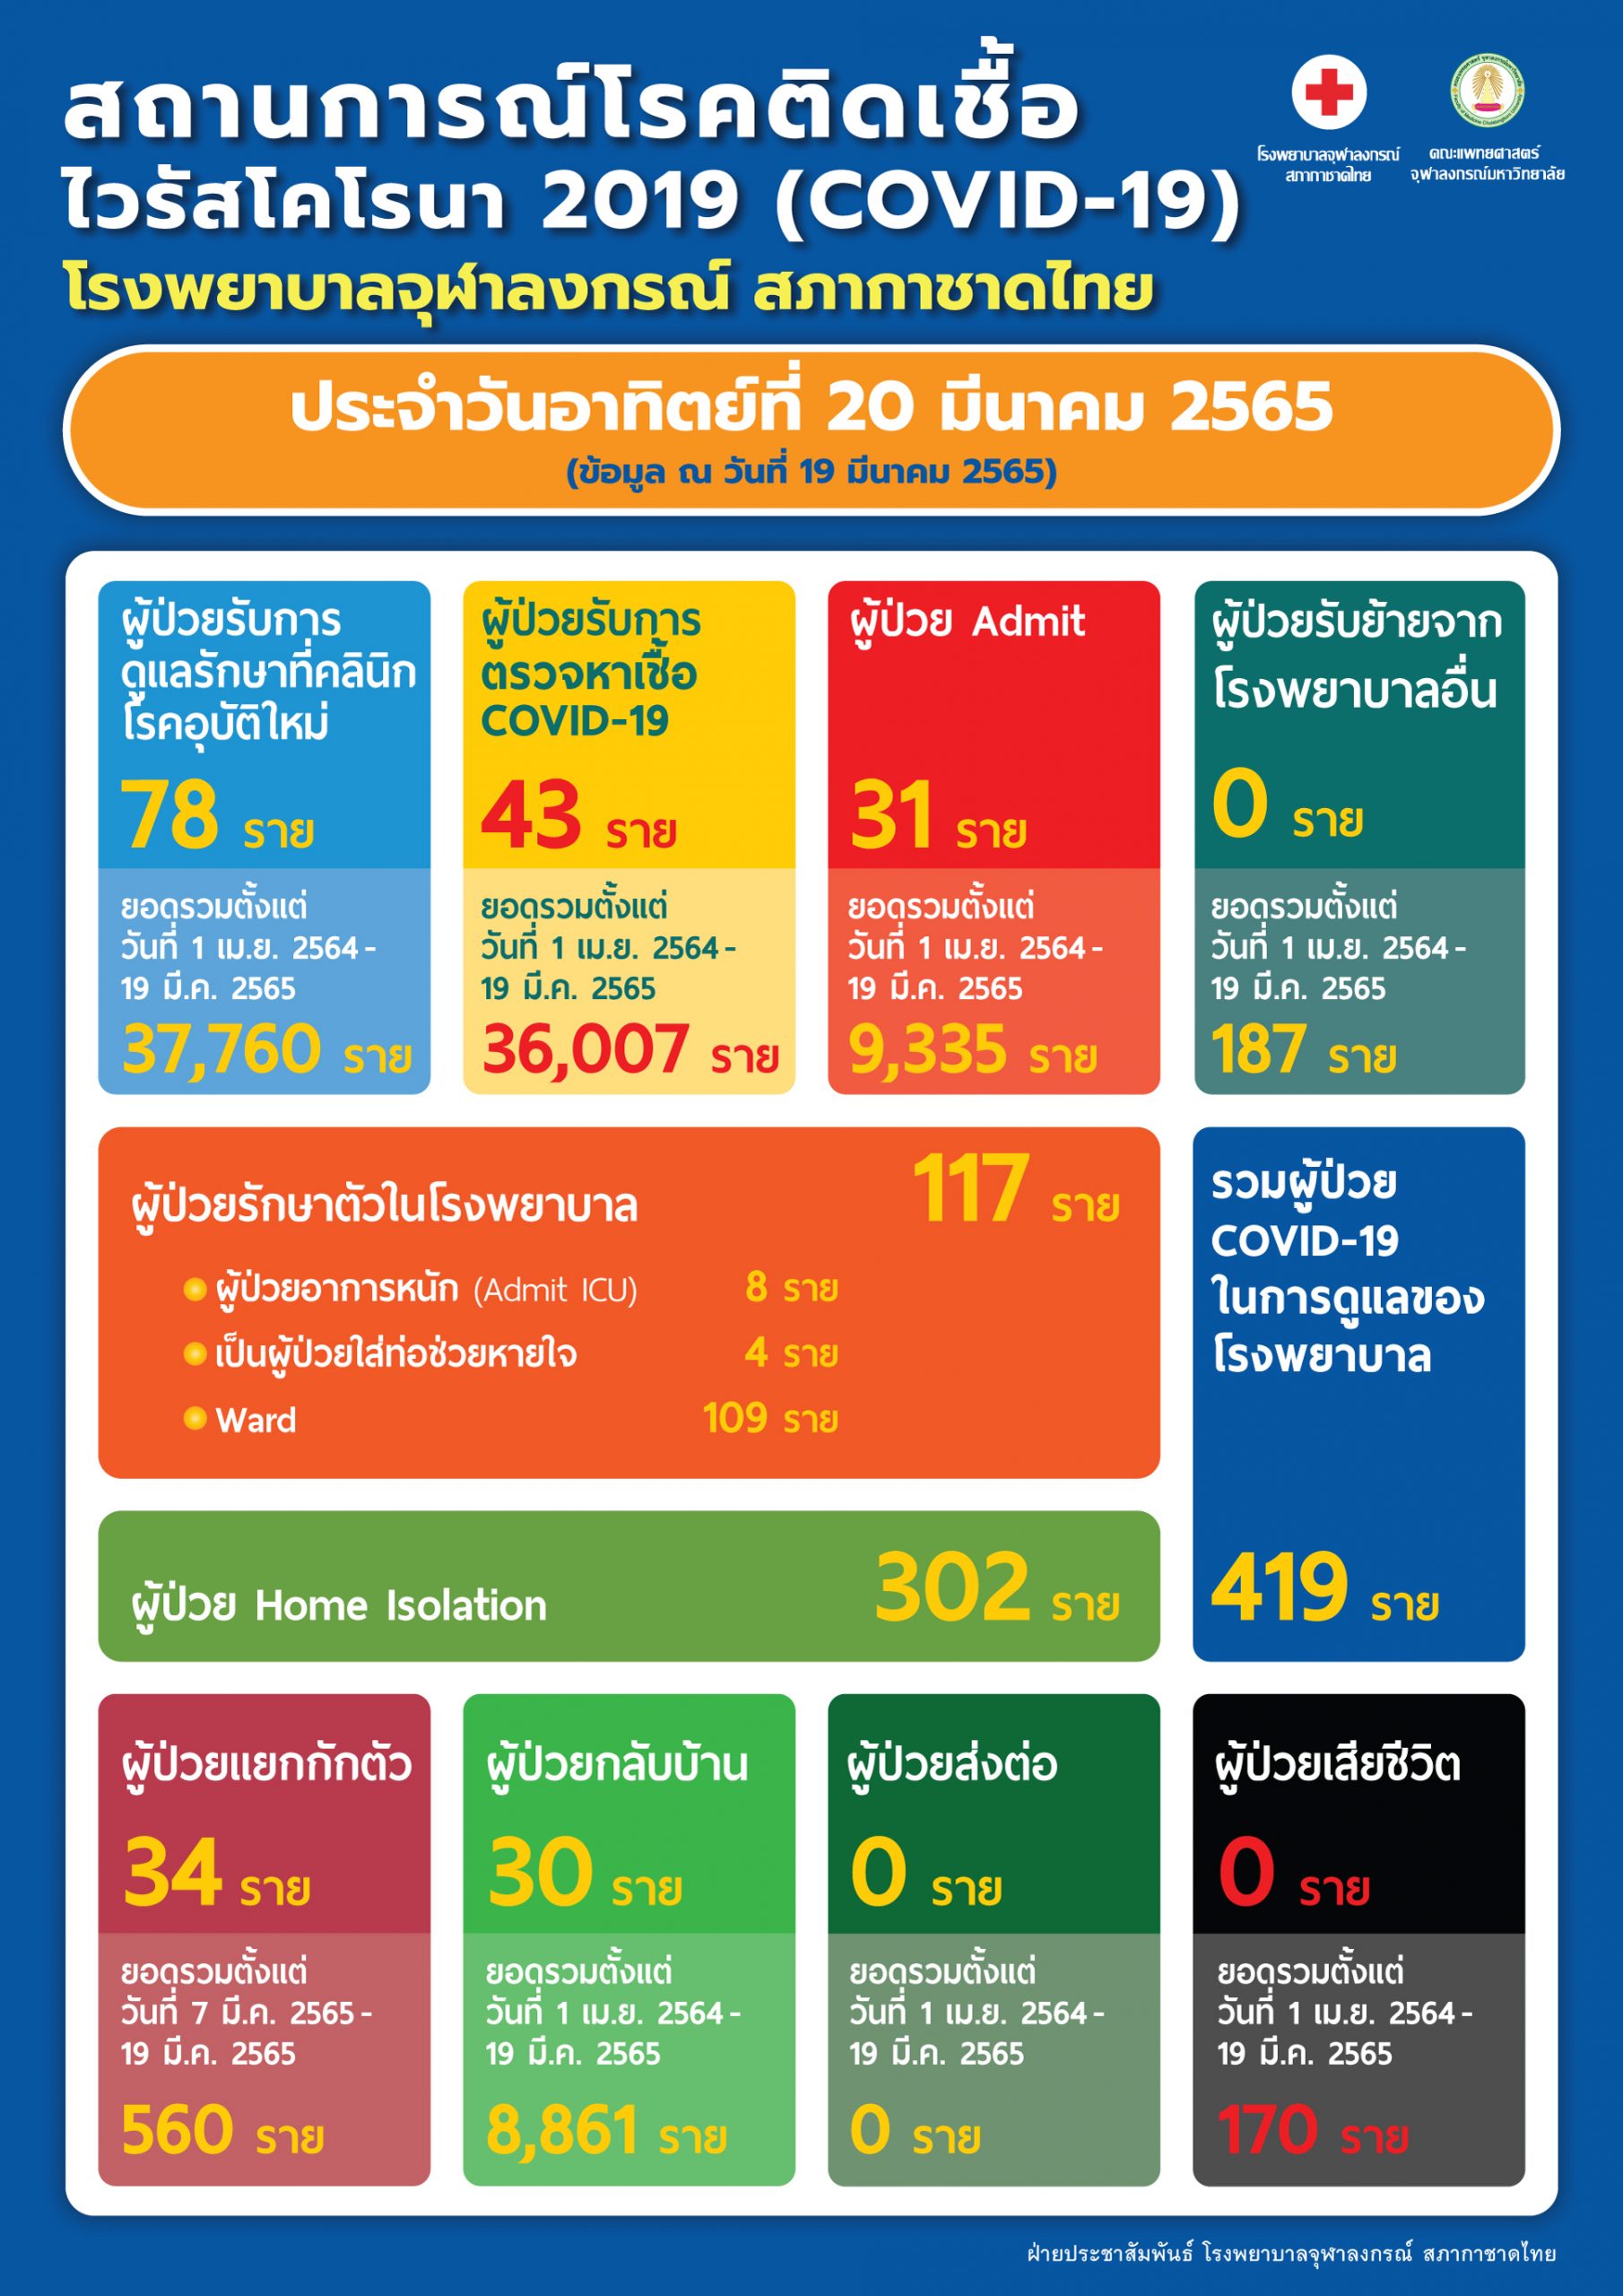 สถานการณ์โรคติดเชื้อไวรัสโคโรนา 2019 (COVID-19) โรงพยาบาลจุฬาลงกรณ์ สภากาชาดไทย ประจำวันอาทิตย์ที่ 20 มีนาคม 2565